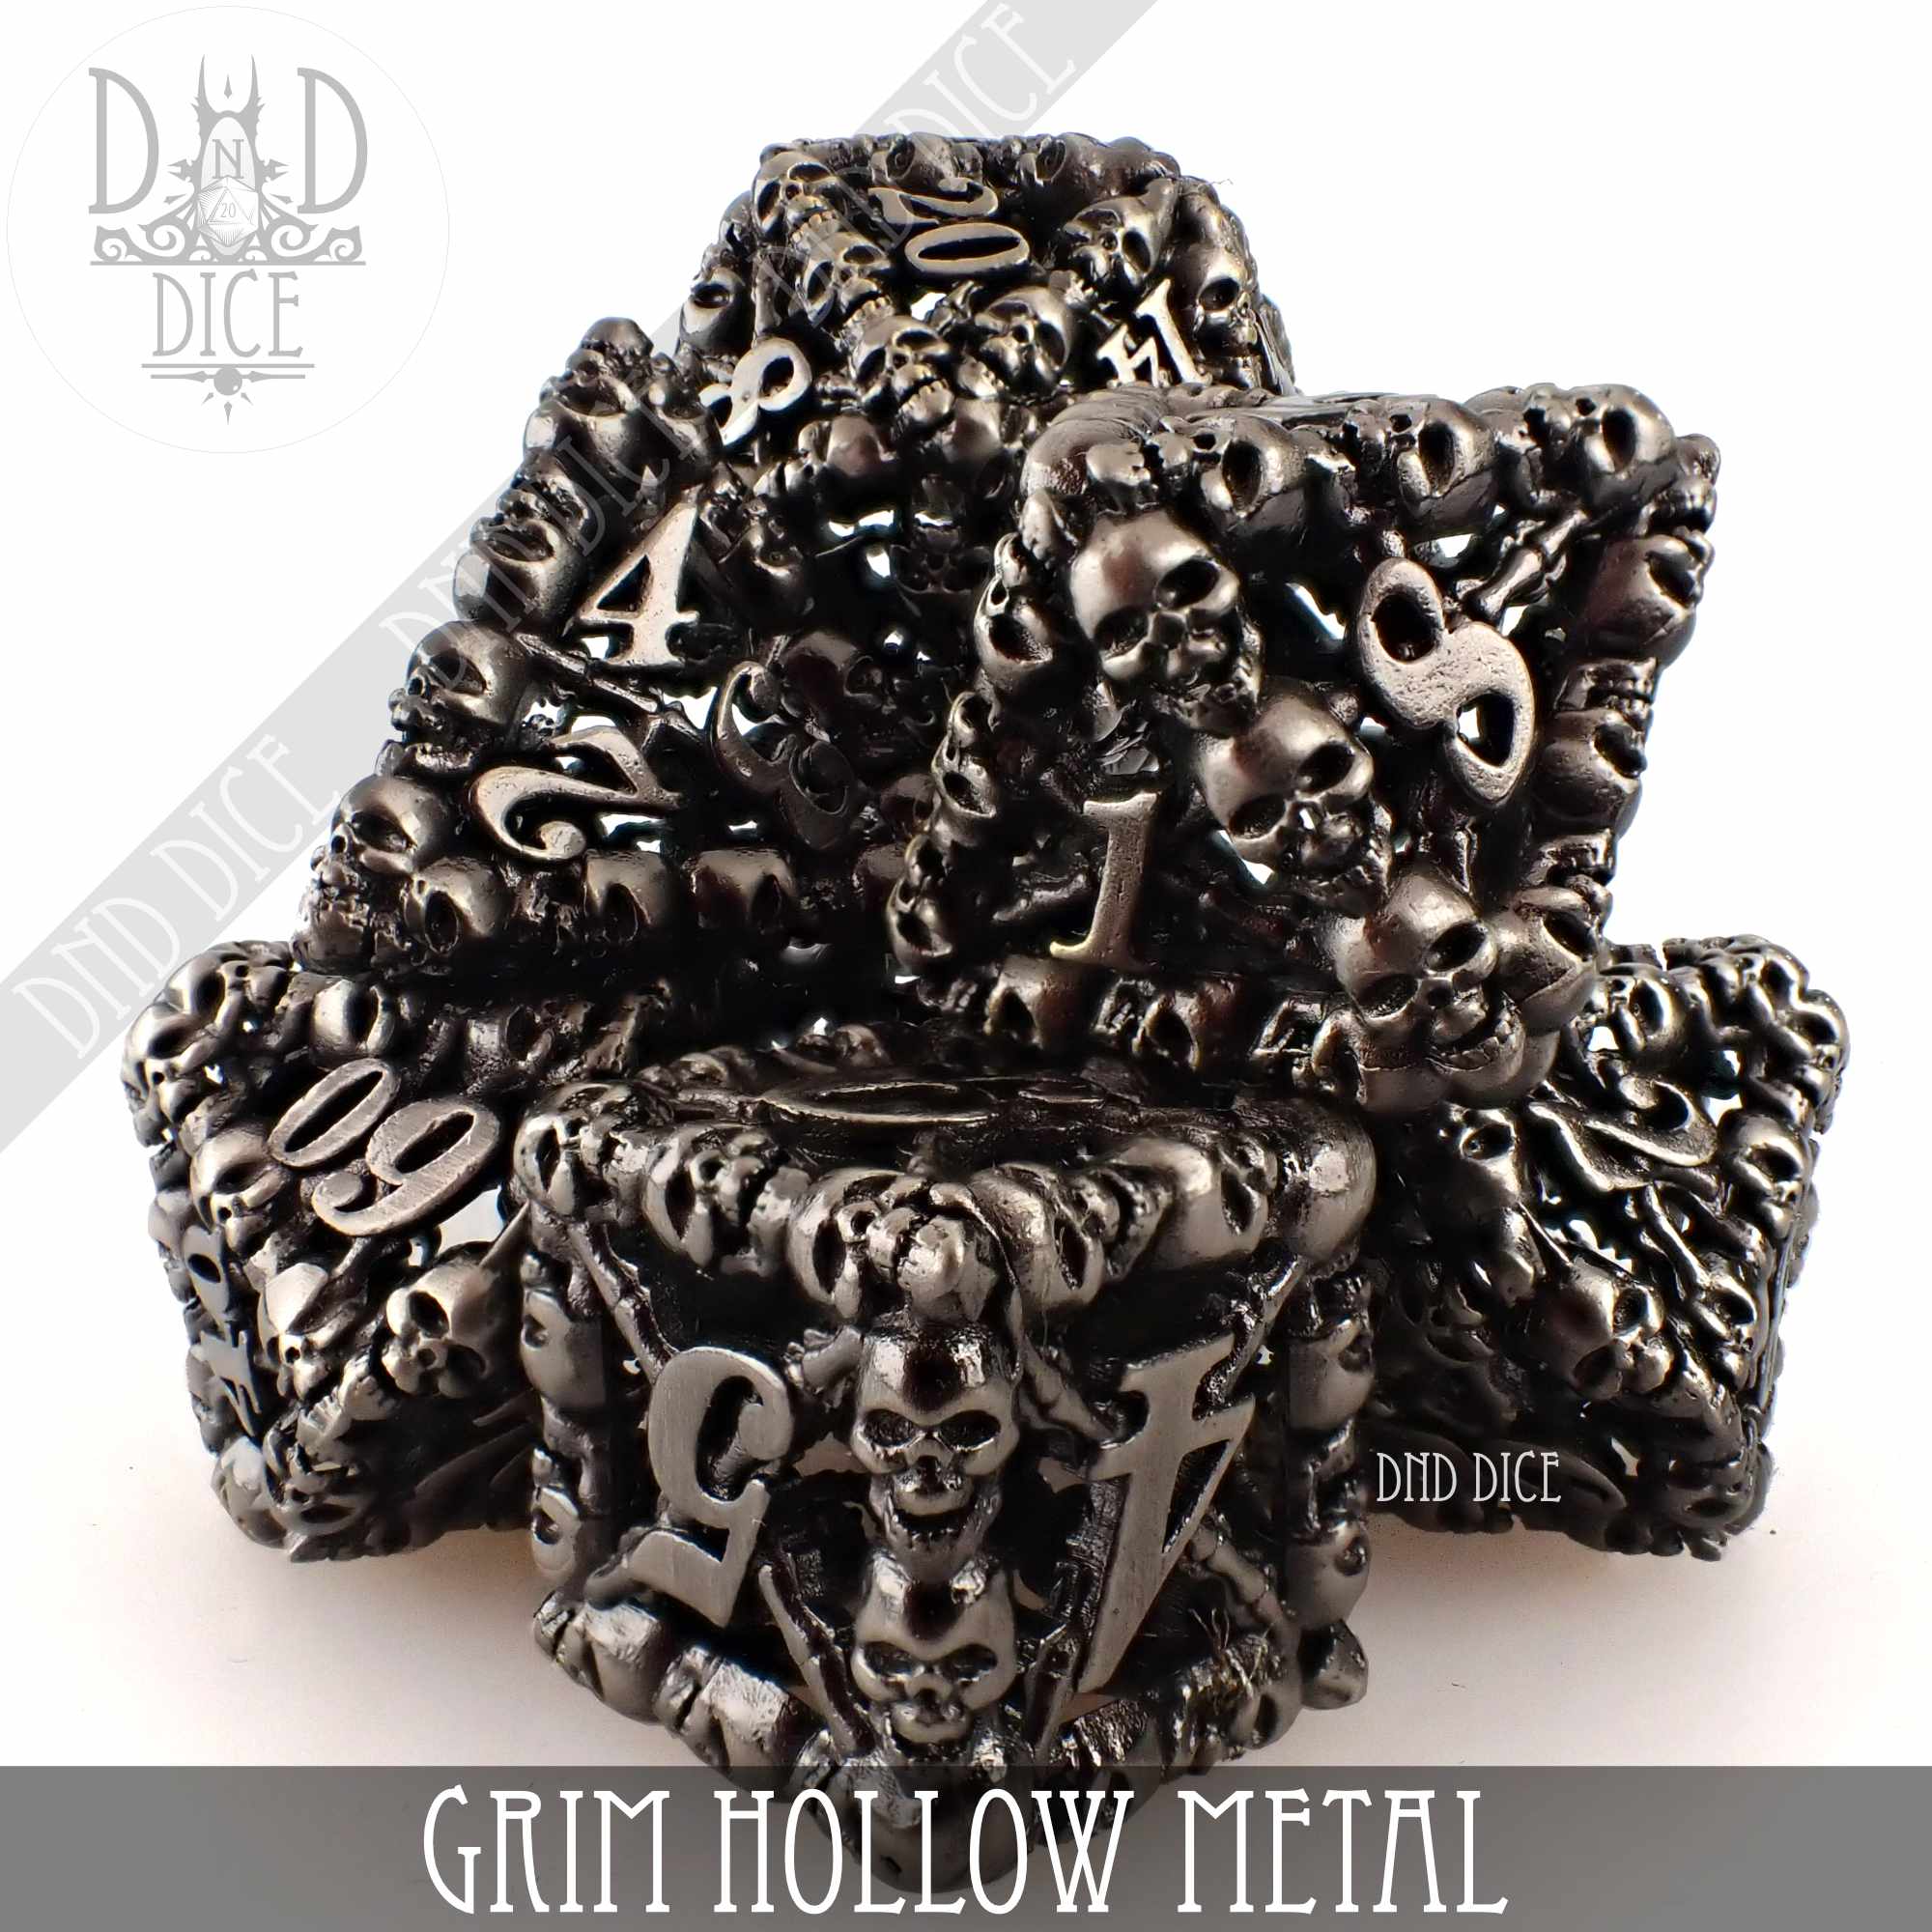 Grim Metal Dice Set (Gift Box)